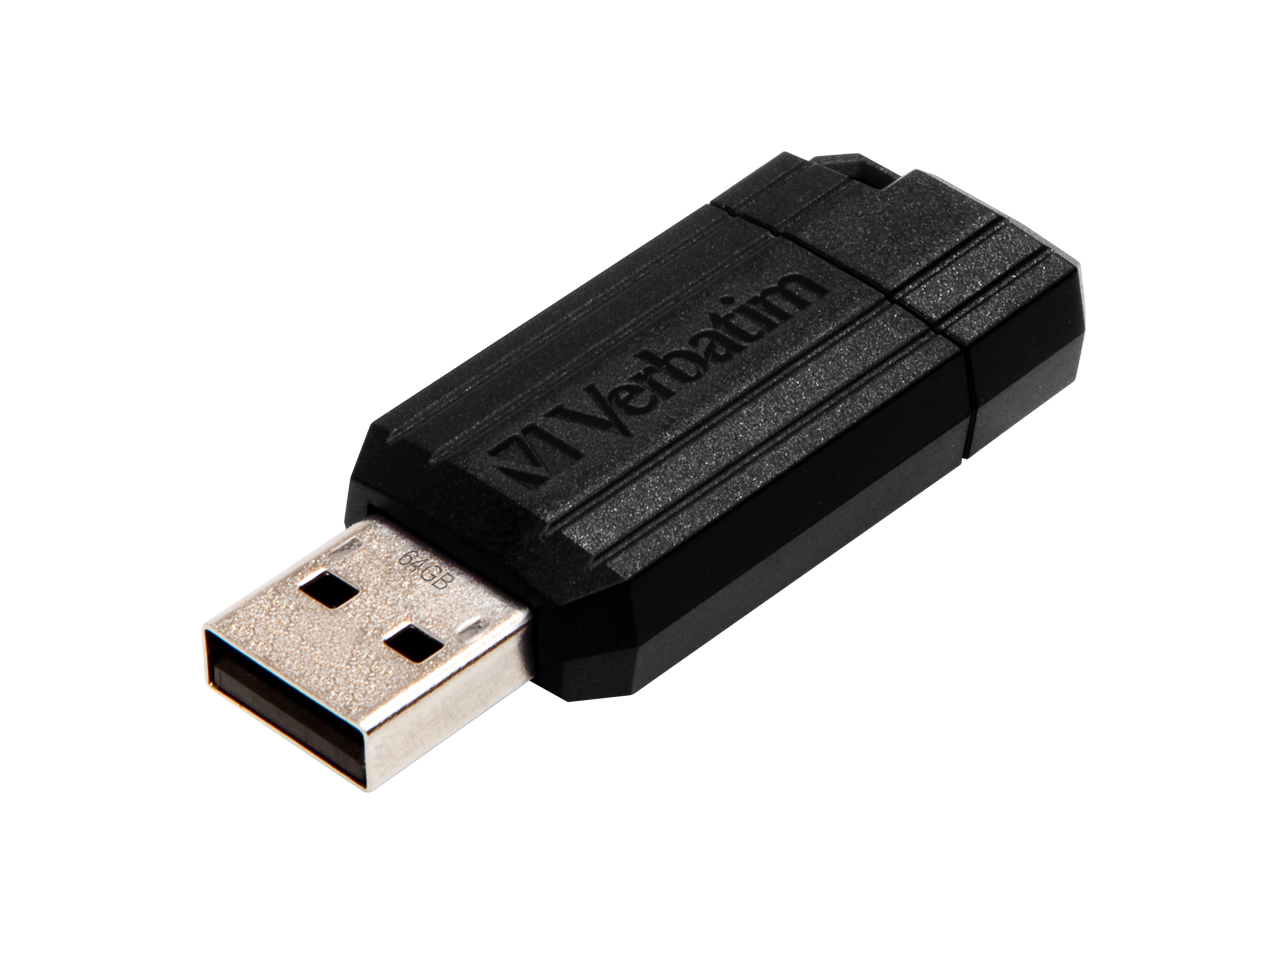 VERBATIM PINSTRIPE USB STICK 64GB 49065 12MB/s USB 2.0 black 1